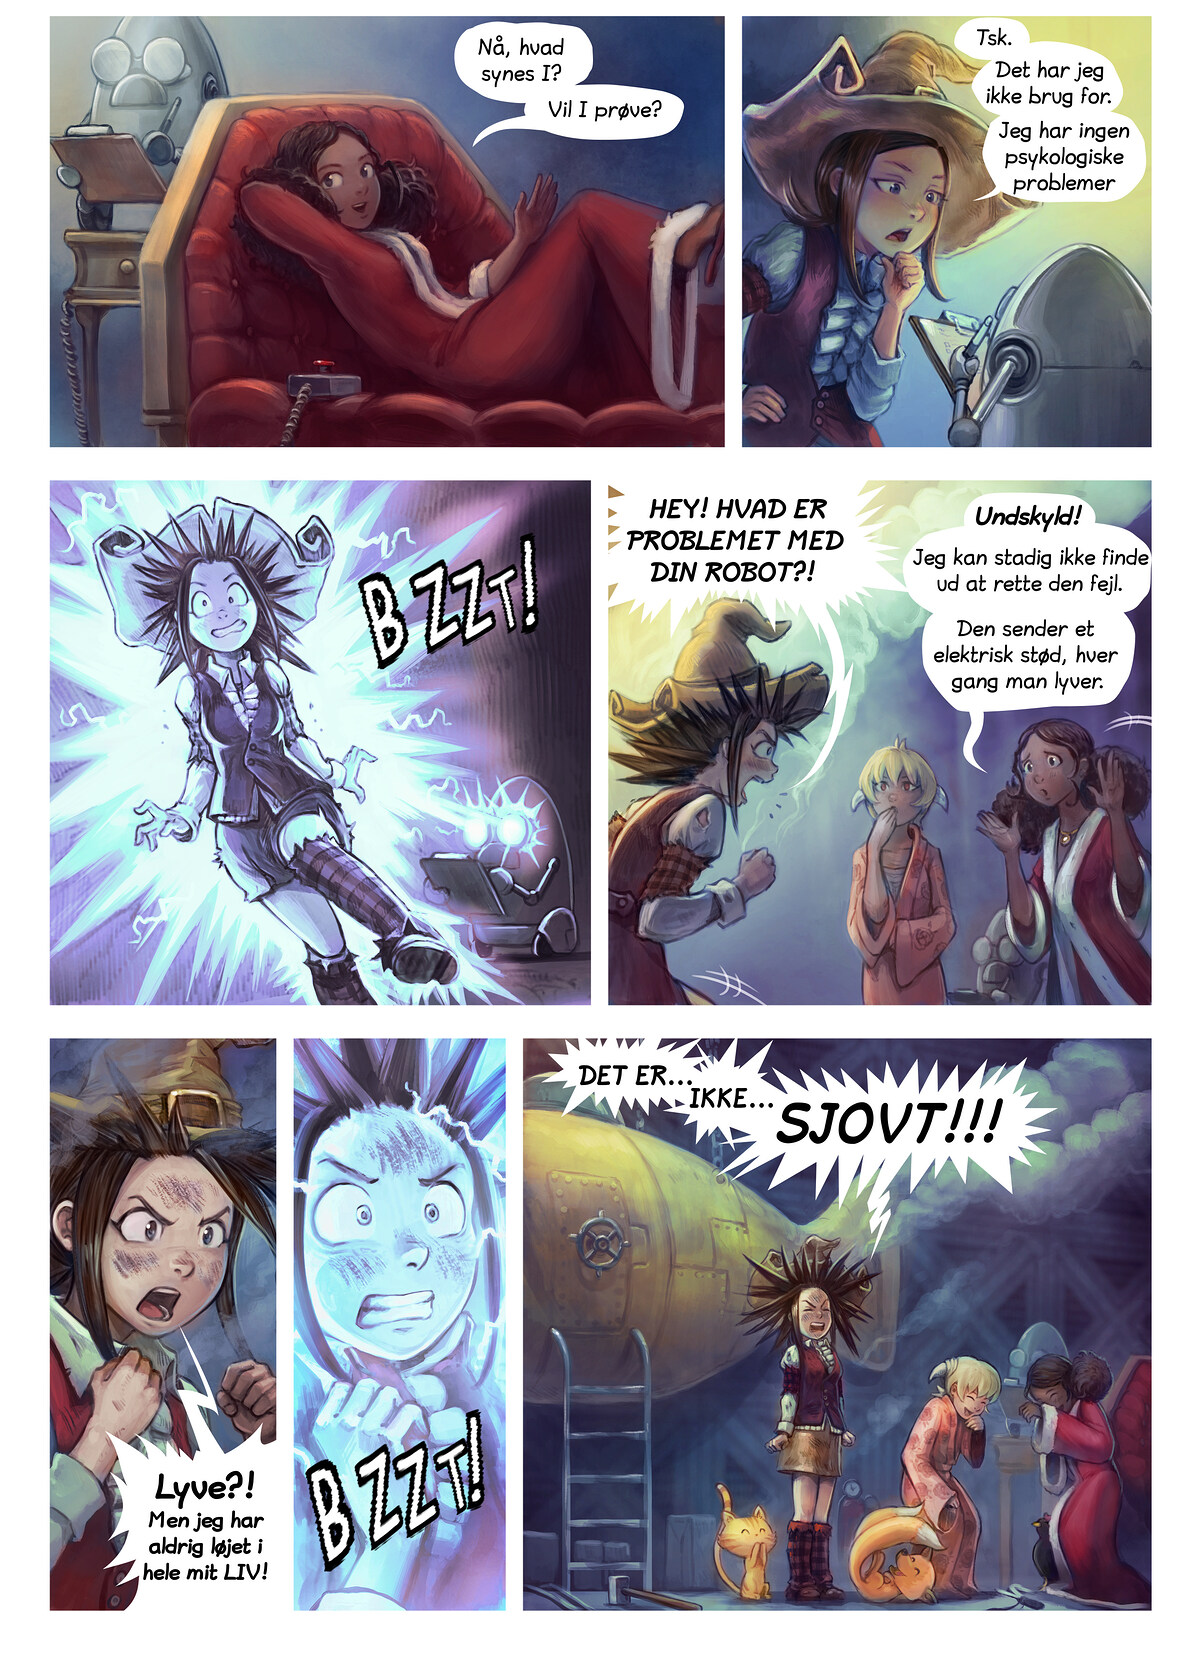 Episode 27: Korianders opfindelse, Page 4